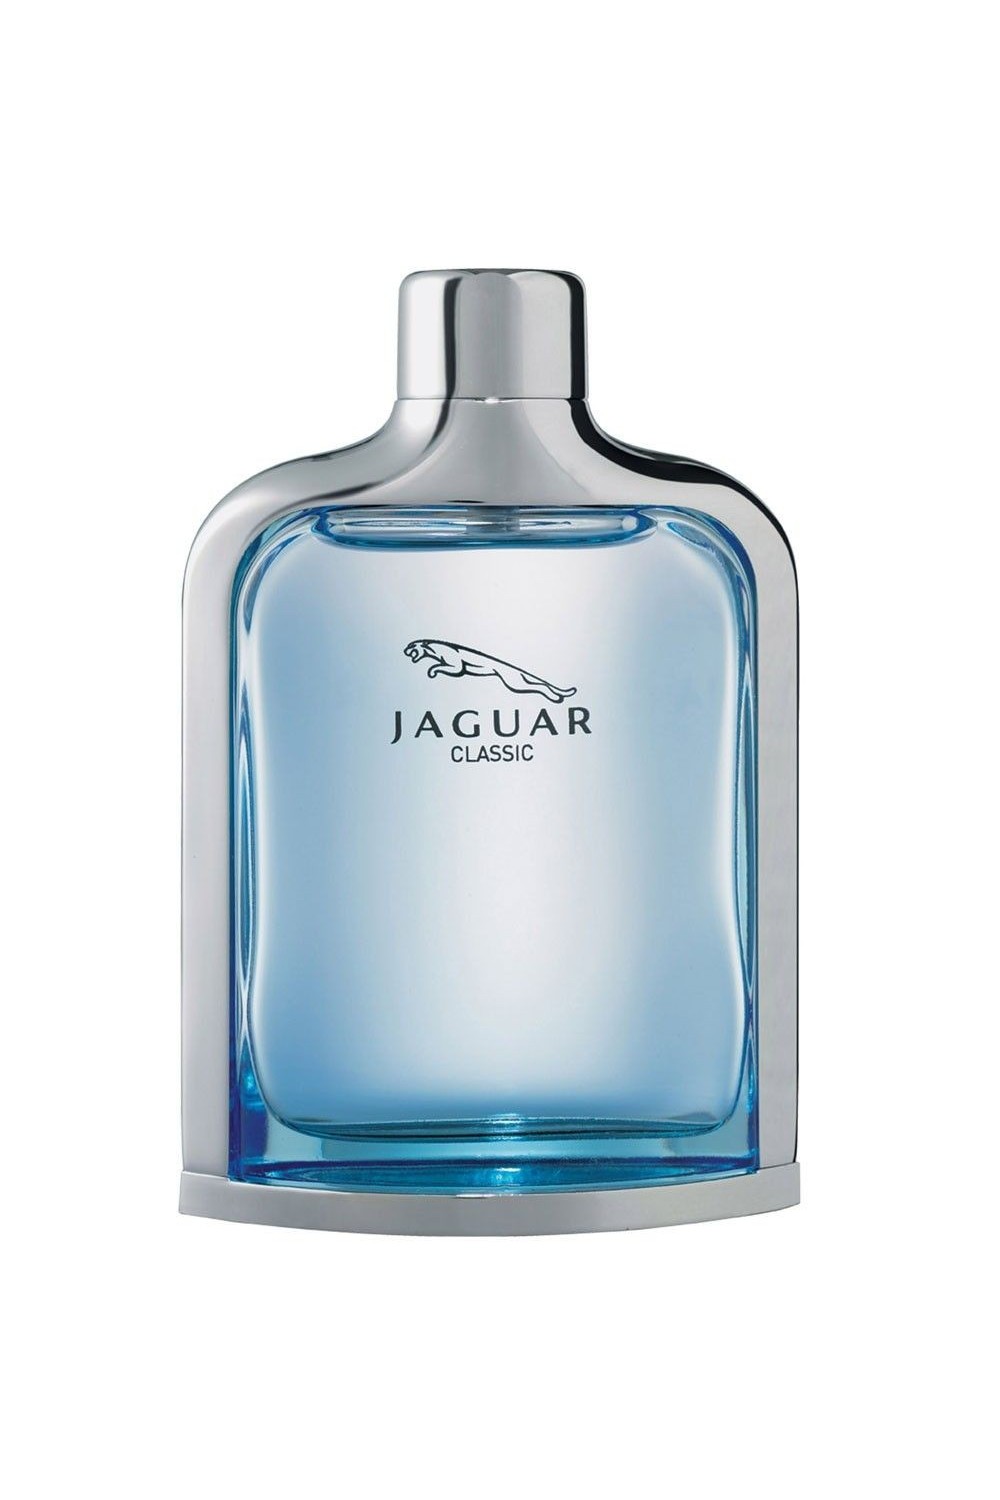 Jaguar Classic Eau De Toilette Spray 100ml